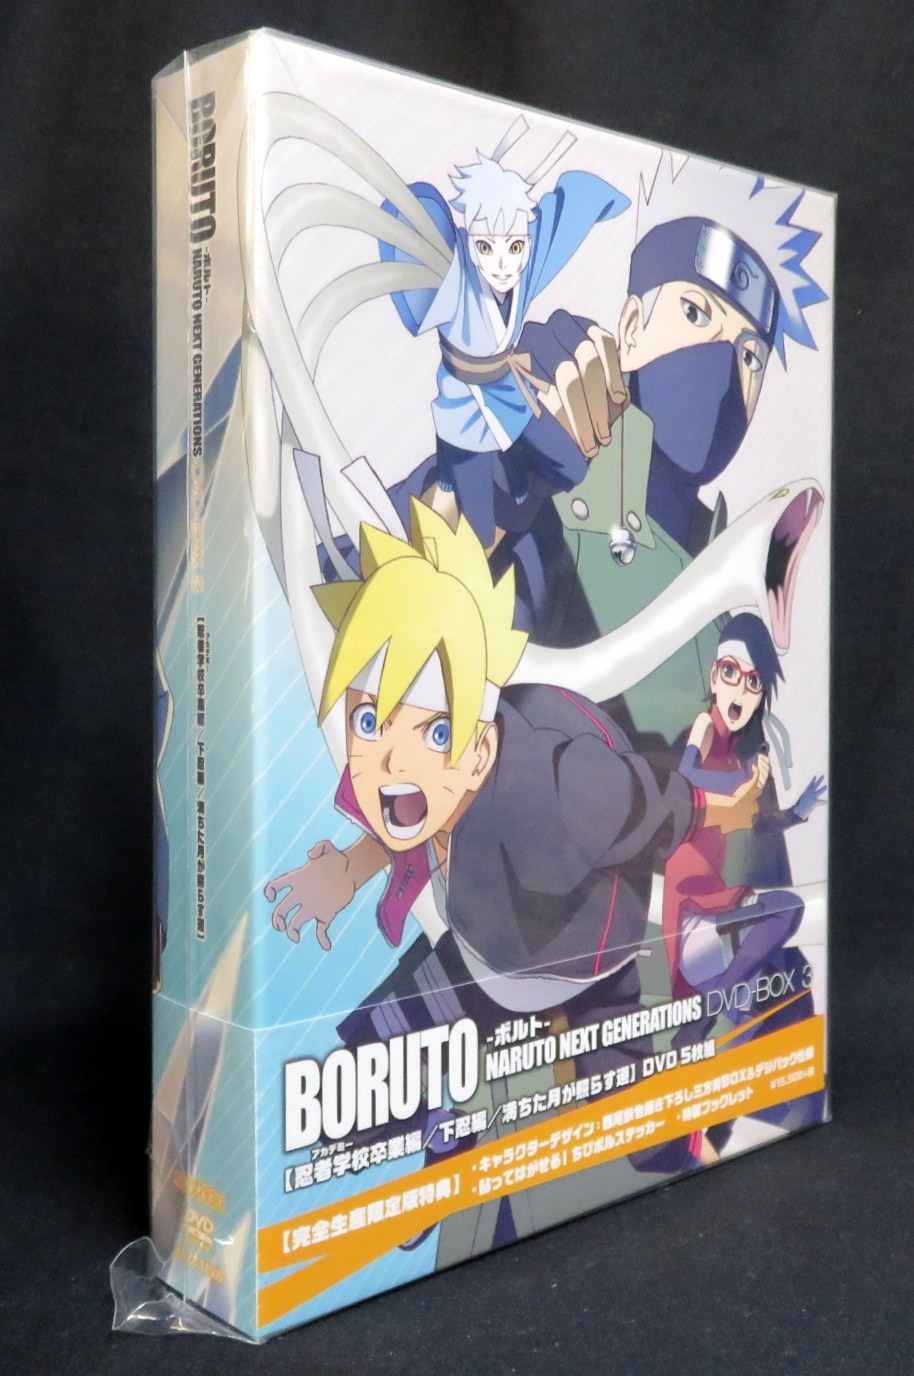 アニメdvd 未開封 限定版 Boruto ボルト Naruto Next Generations Dvd Box 3巻 まんだらけ Mandarake